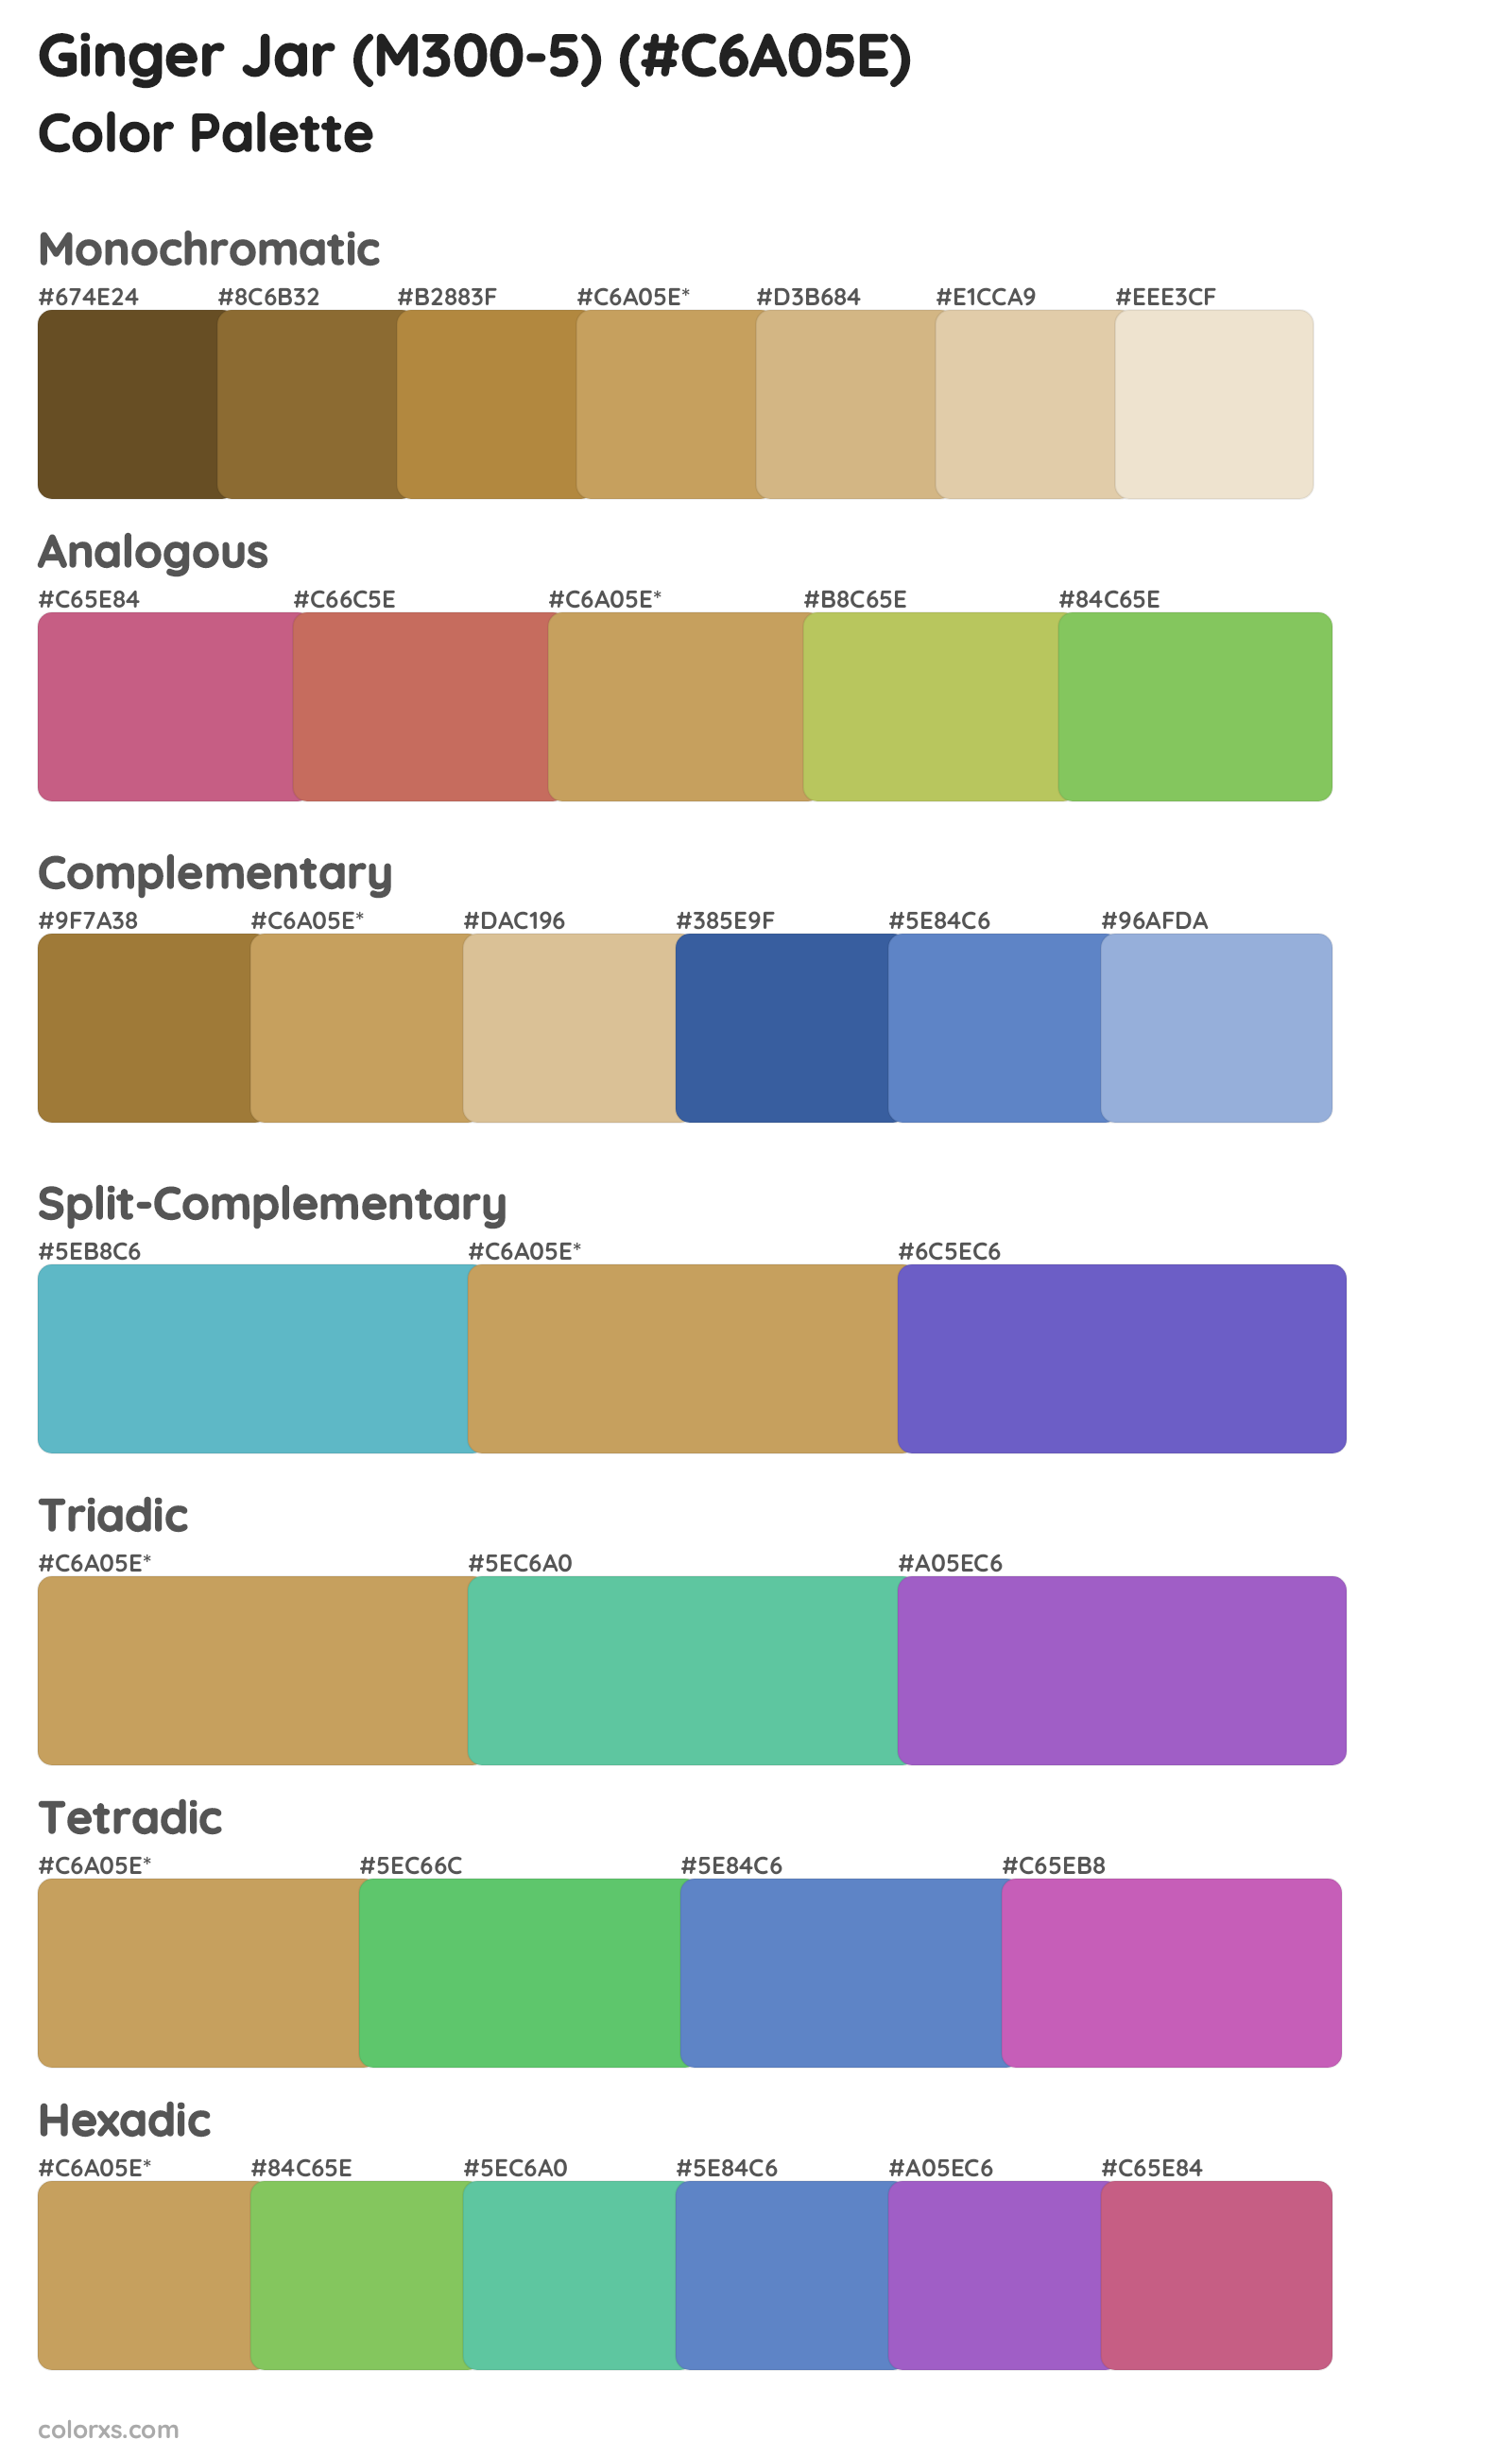 Ginger Jar (M300-5) Color Scheme Palettes